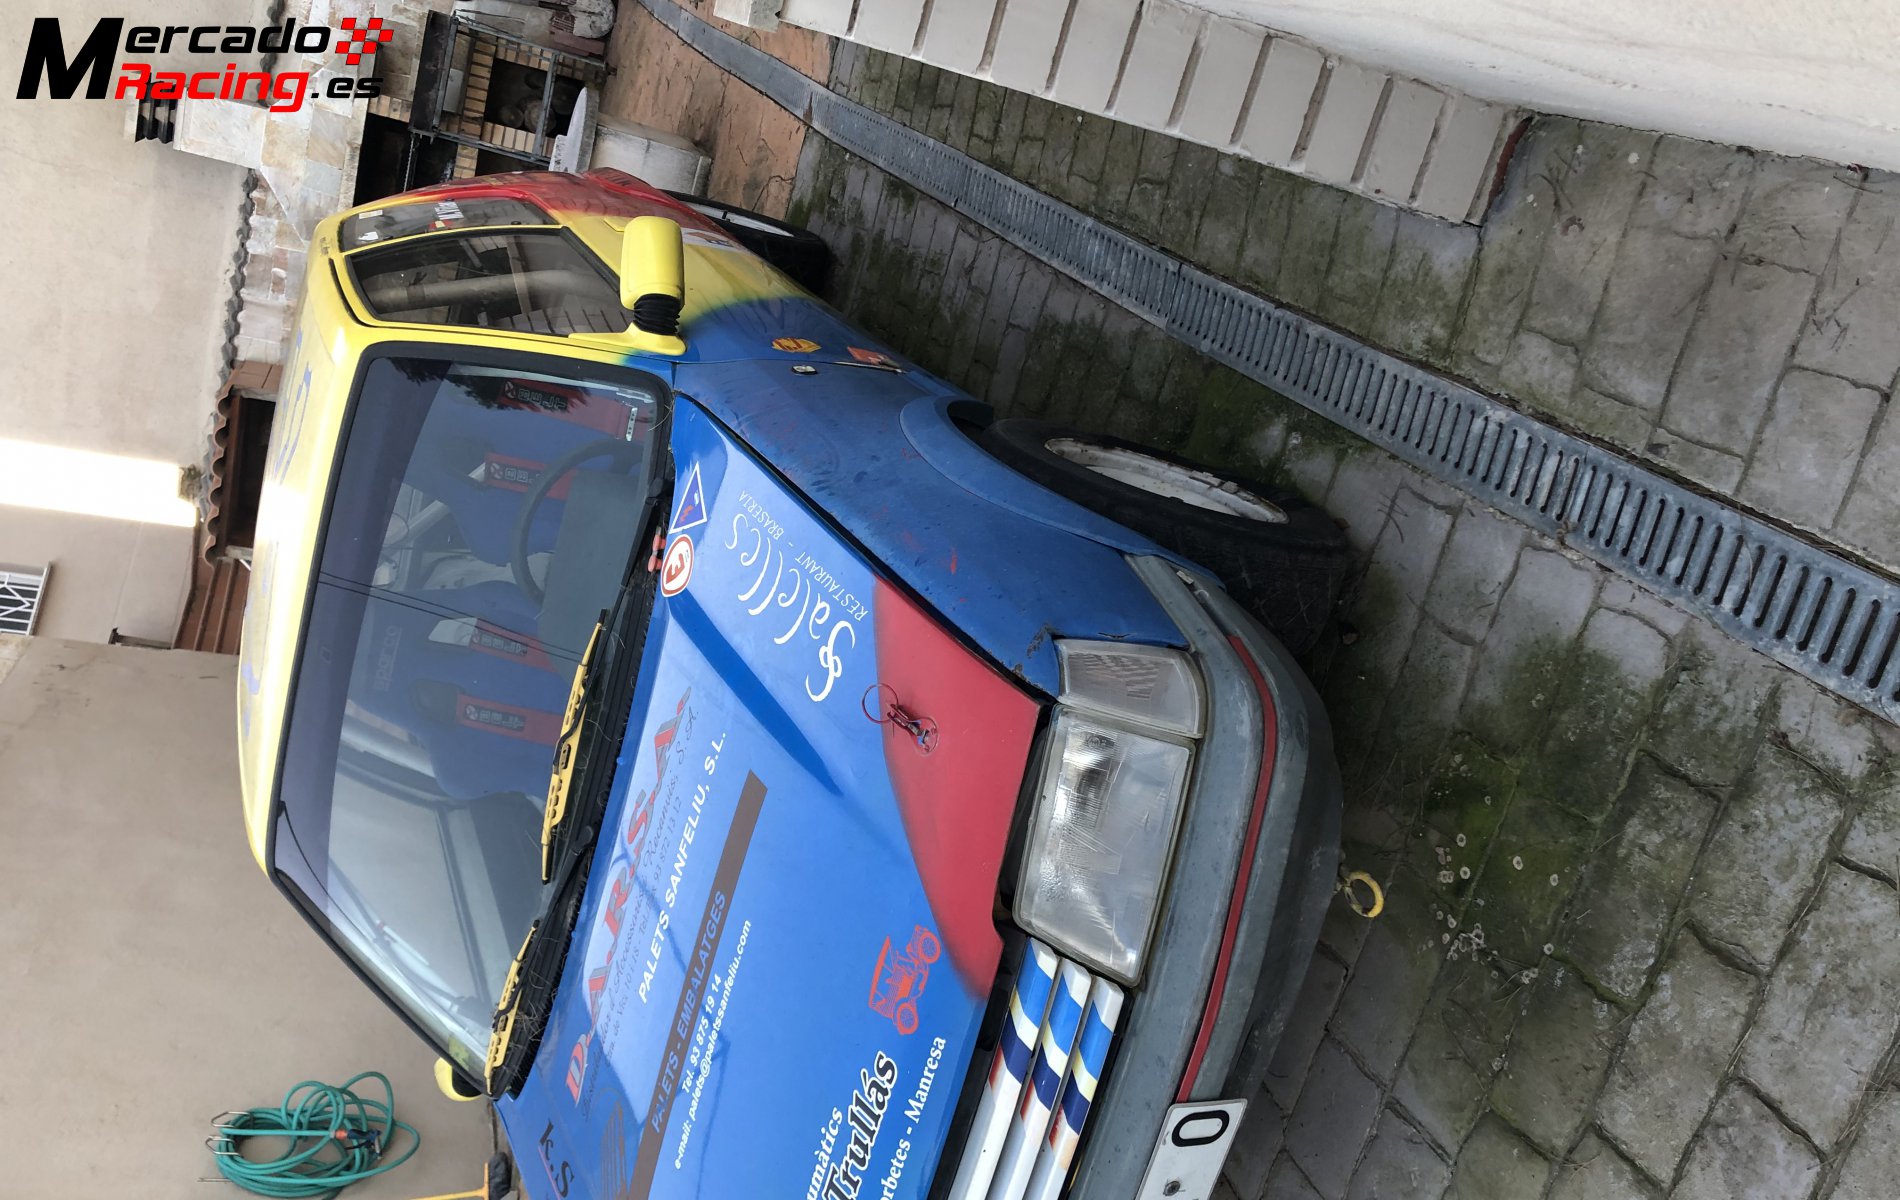 Peugeot 205 rallye